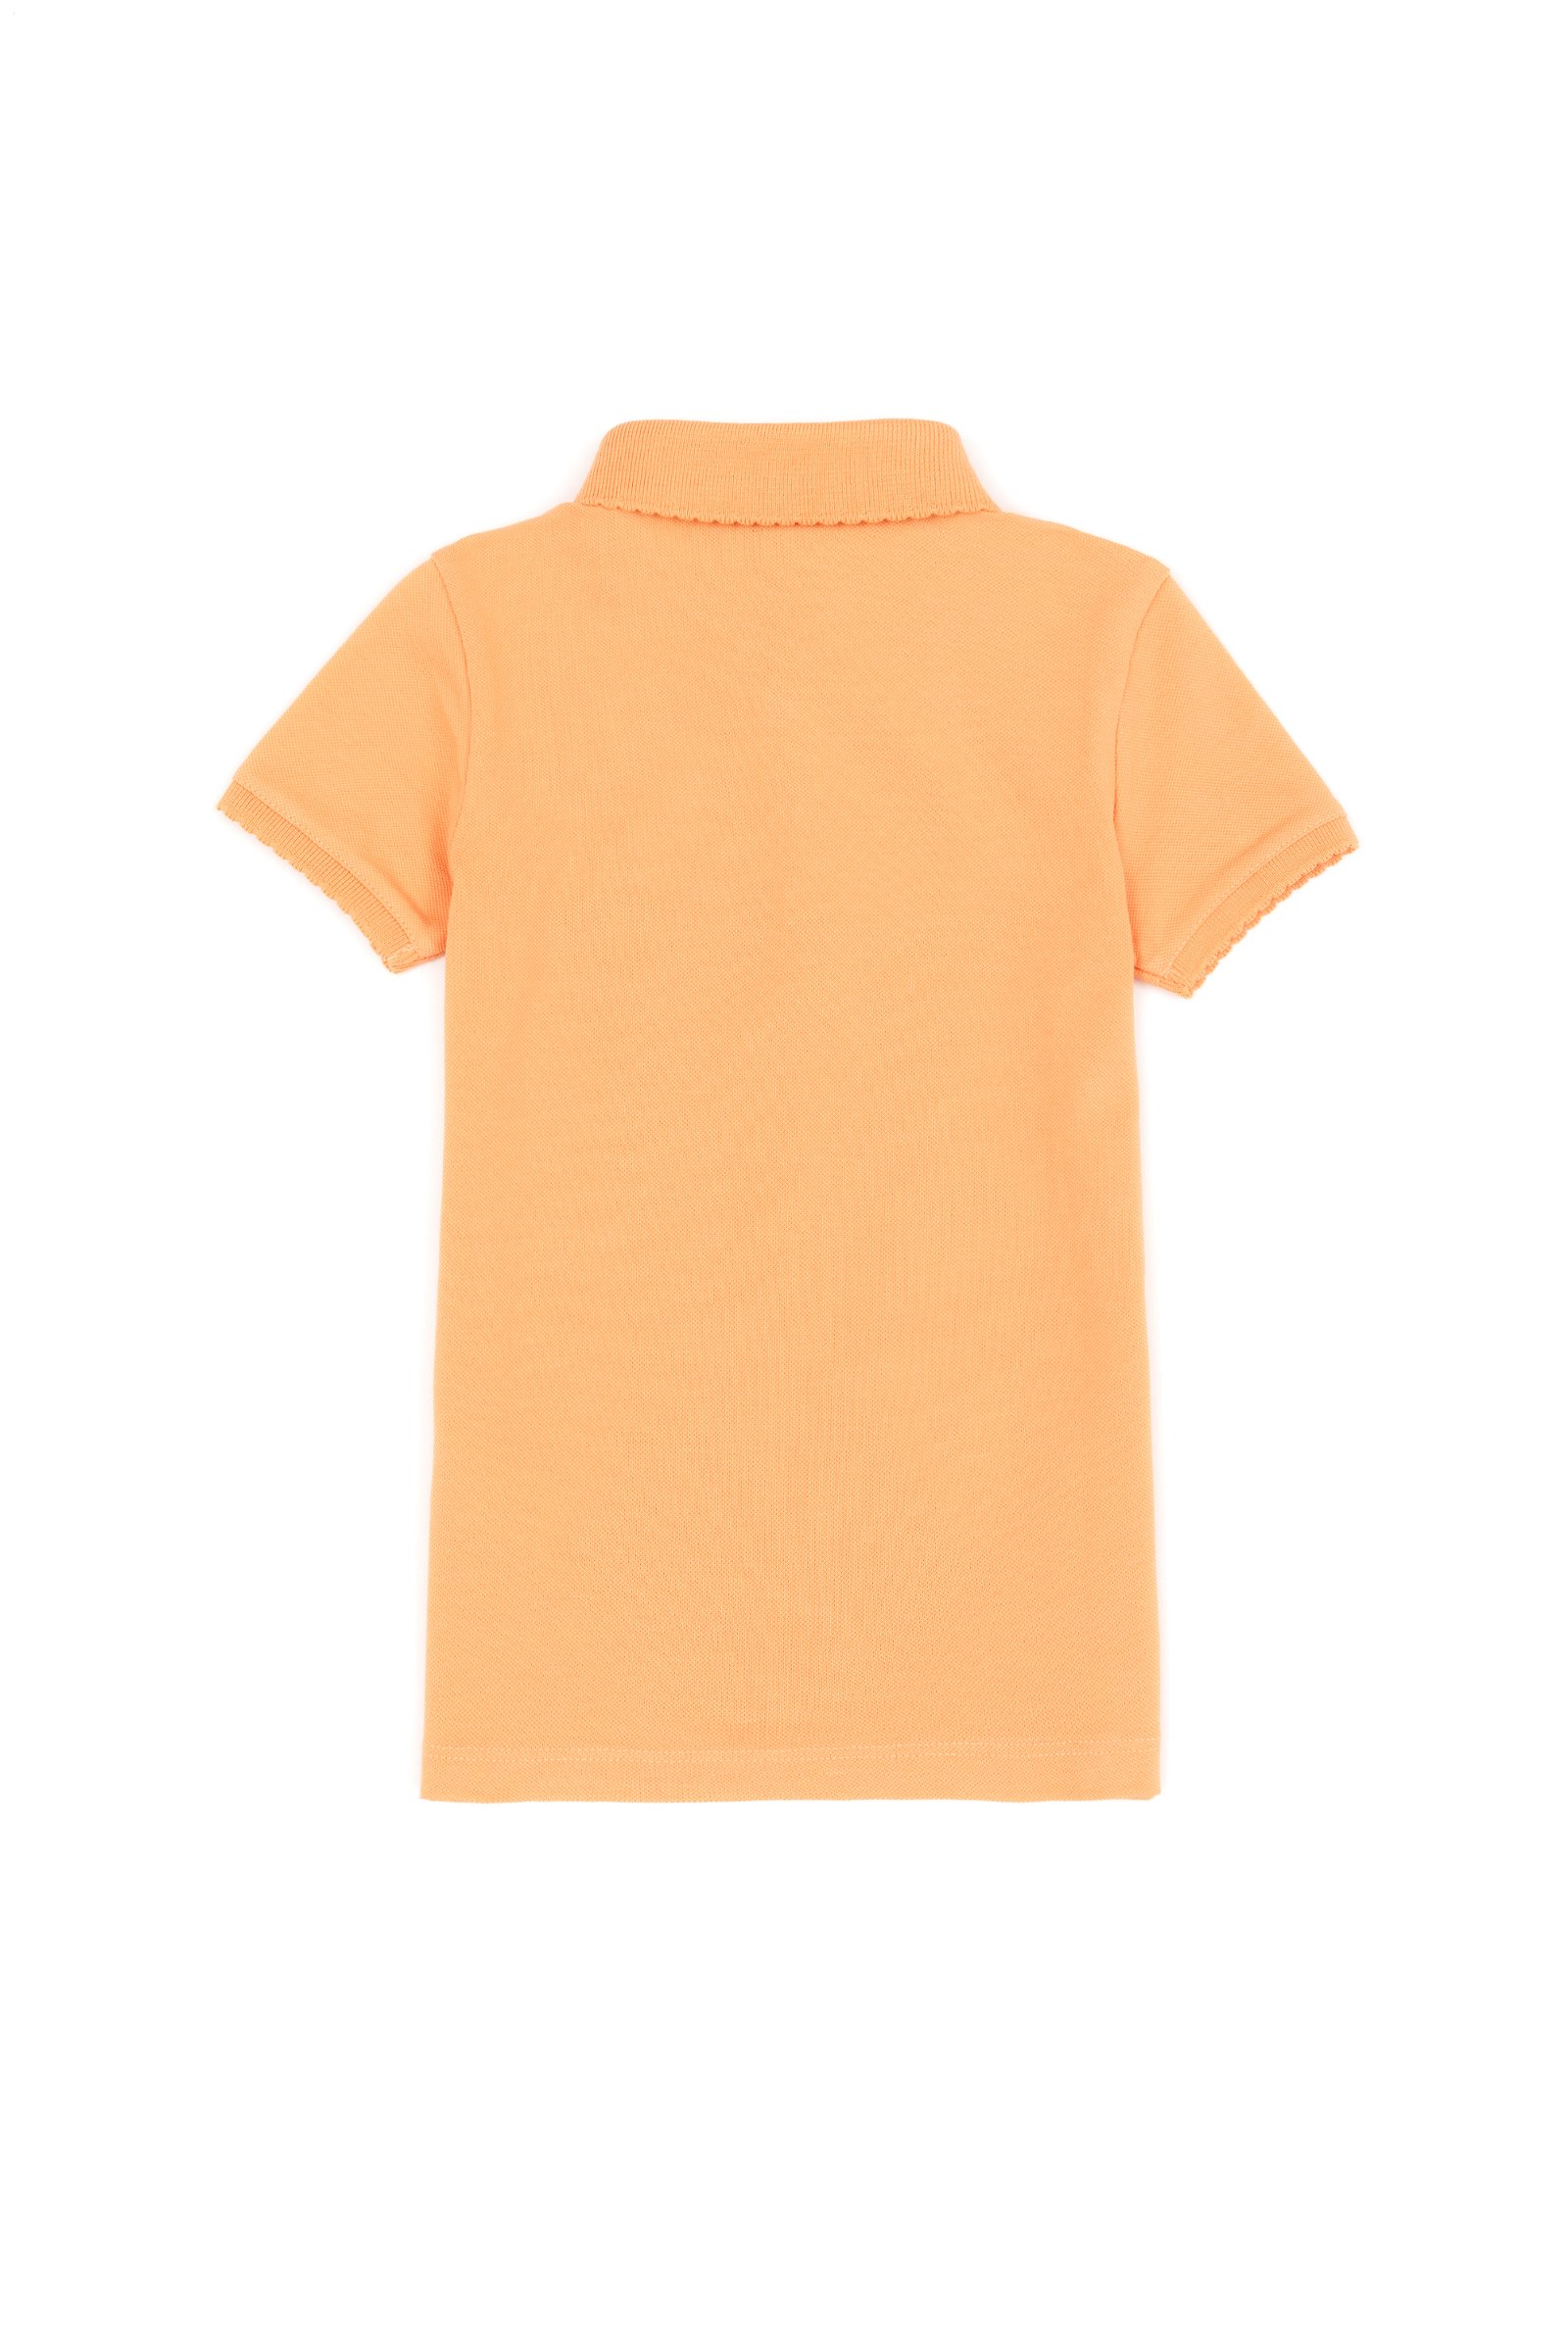 تی شرت  زرد  استاندارد فیت  دخترانه یو اس پولو